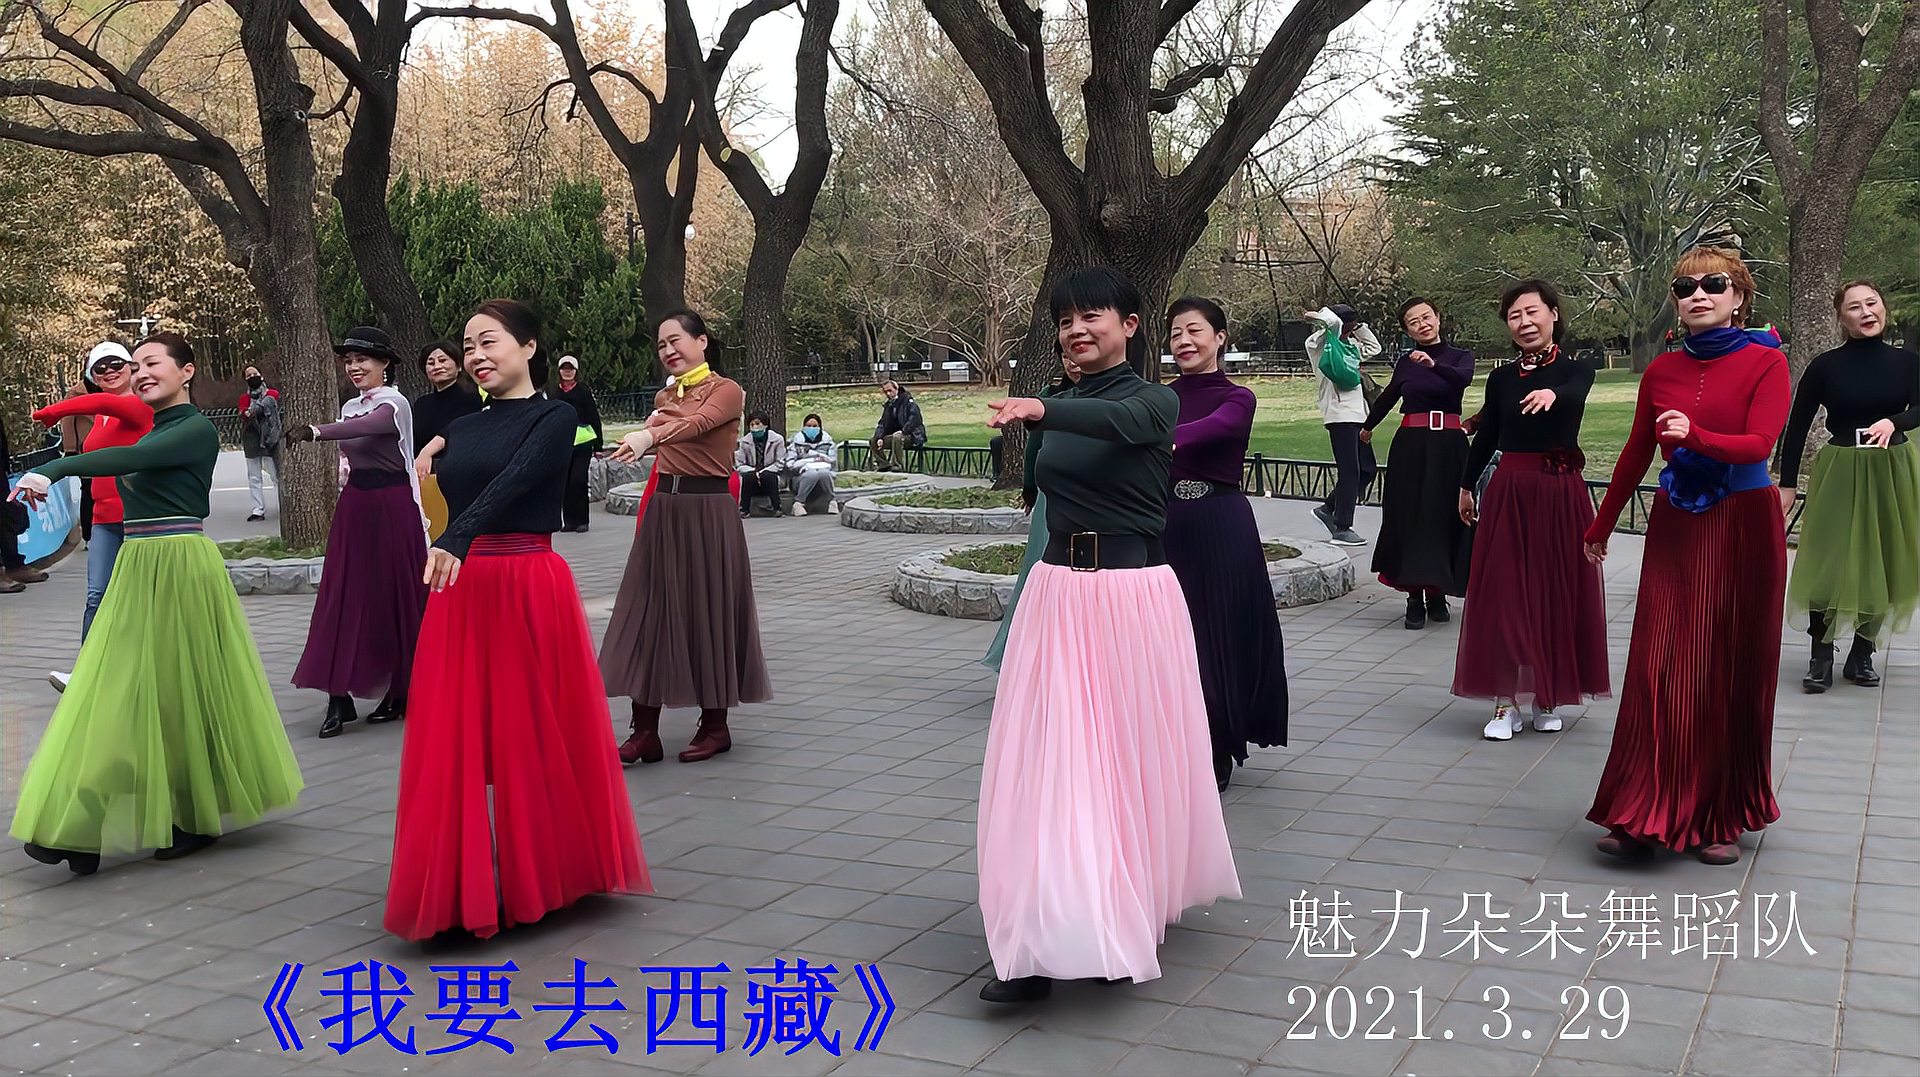 【舞】魅力朵朵舞蹈队表演,广场舞《我要去西藏》2021.3.29紫竹